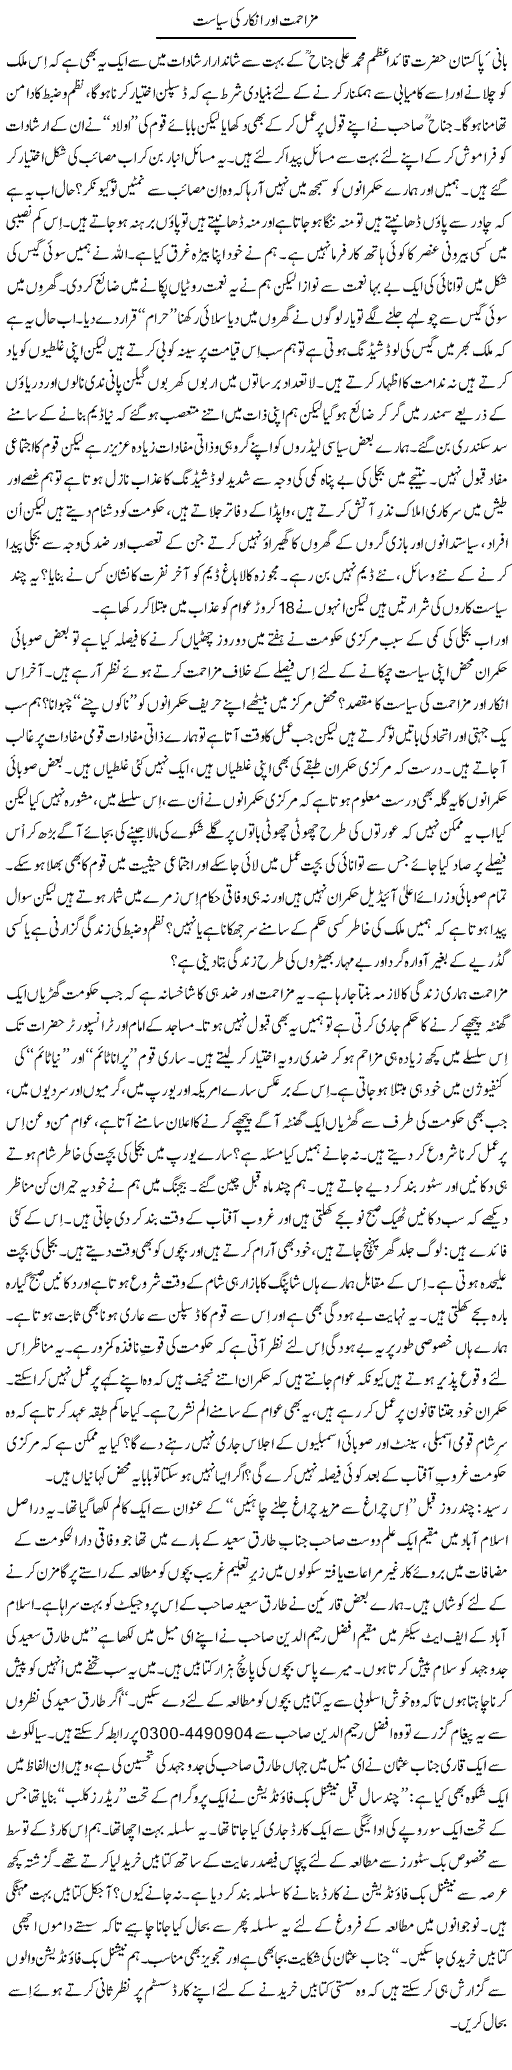 Pakistani Politics Express Column Tanvir Qasir 15 October 2011